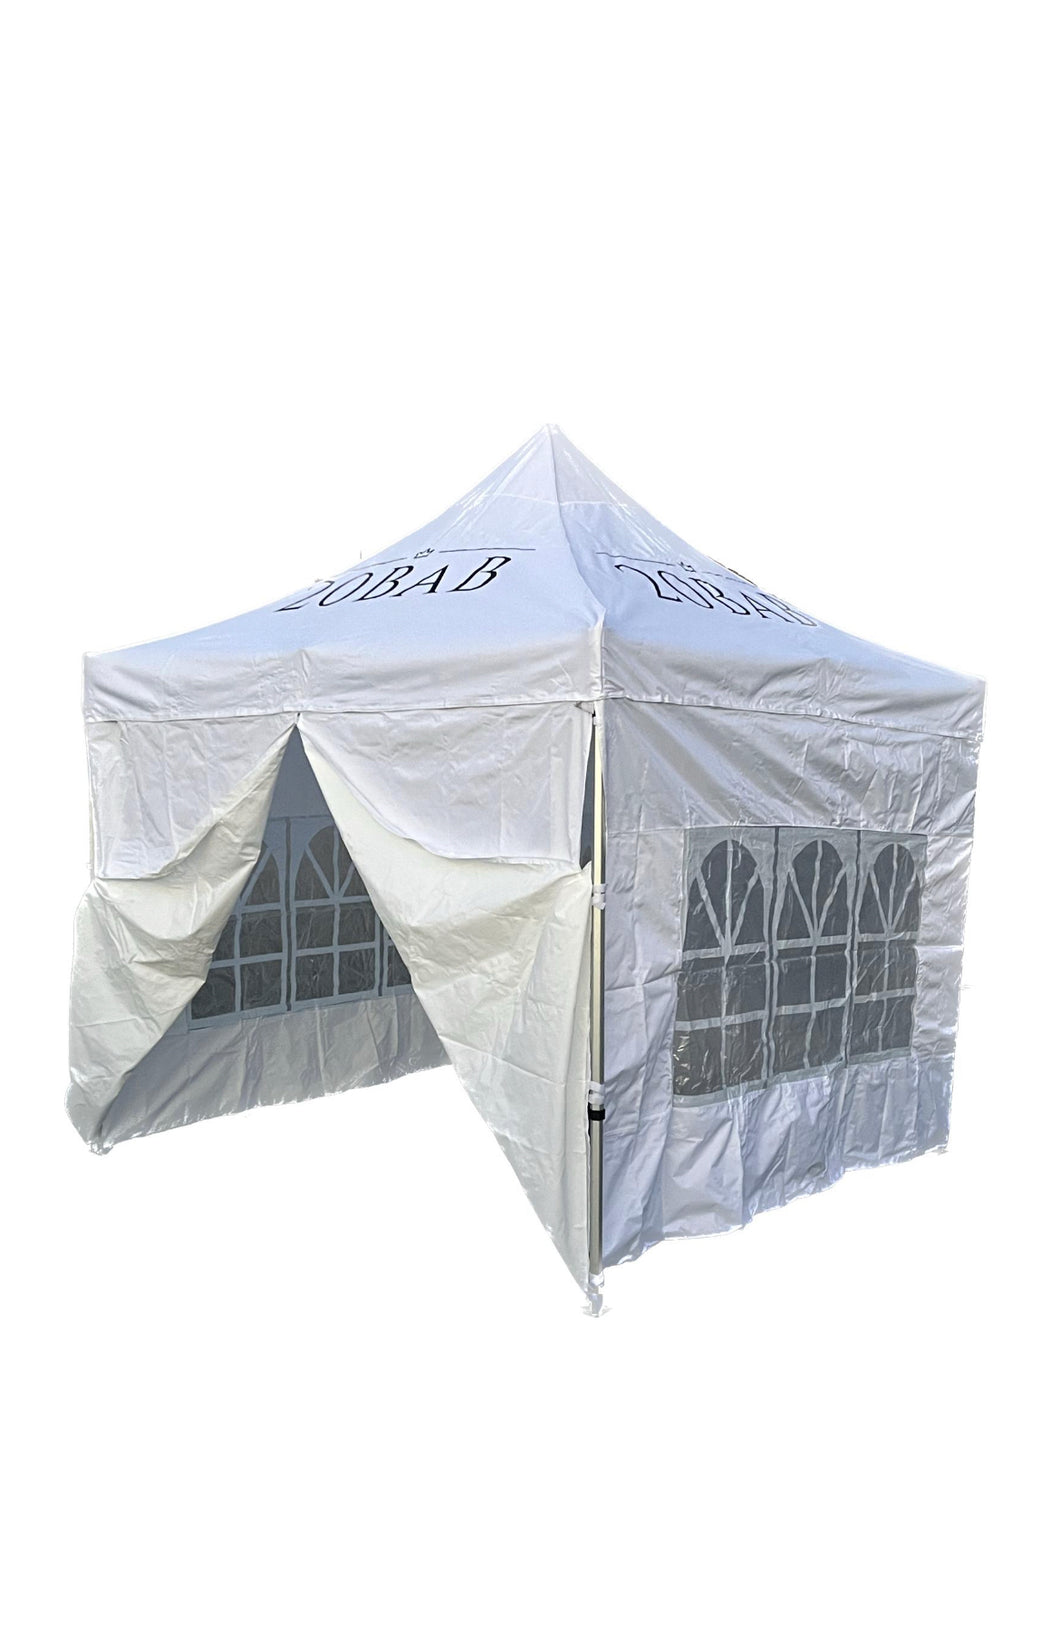 3 x 3 Aluminium Marquee Tent